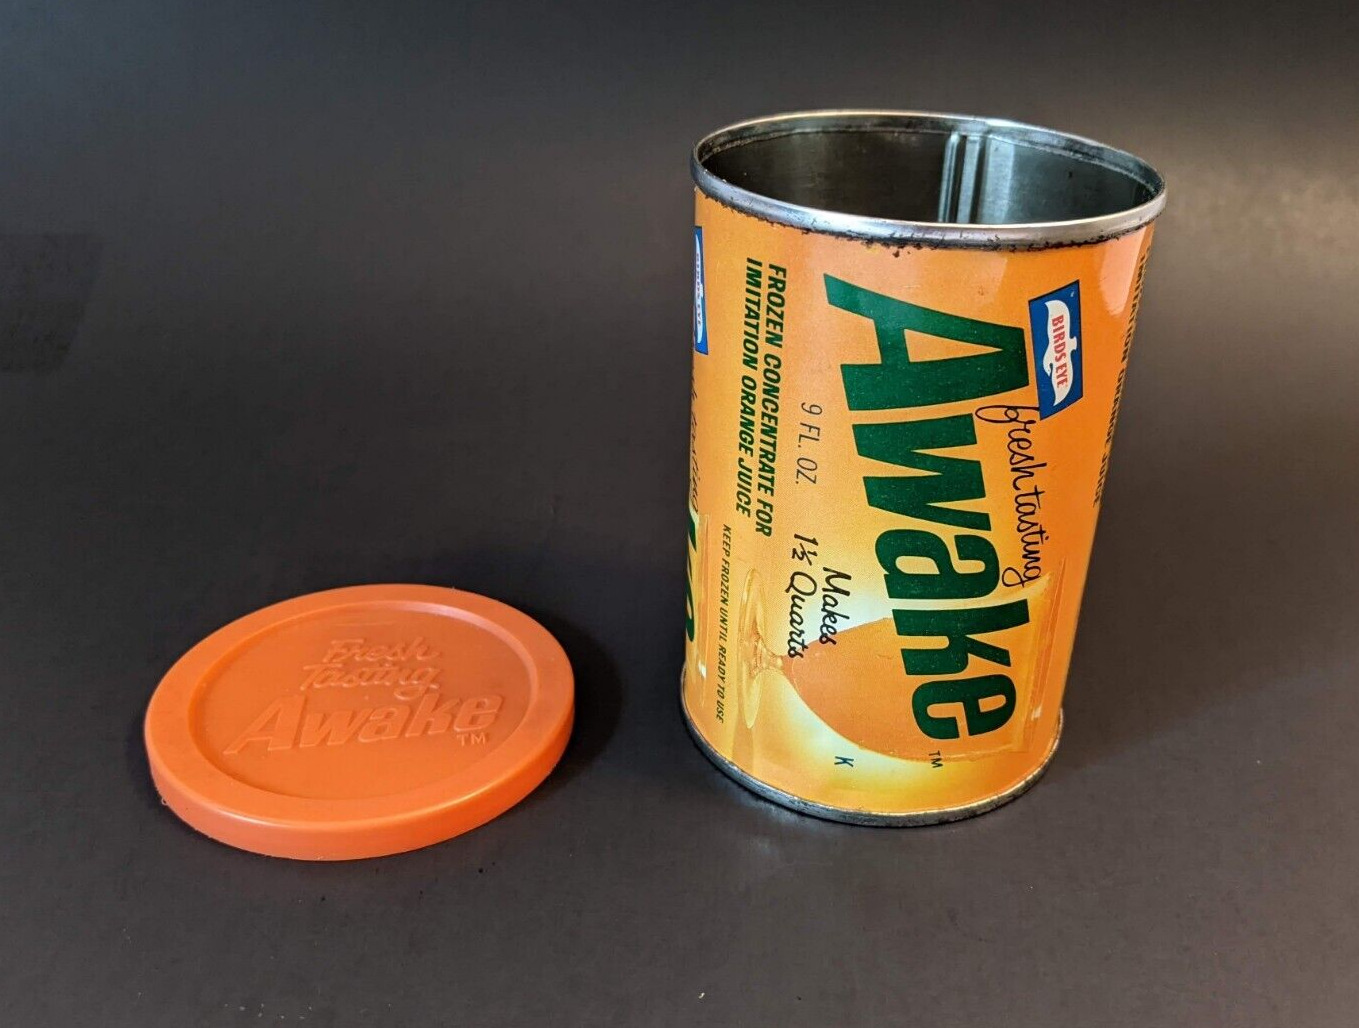 VTG General Foods Birds Eye Metal Awake Orange Juice Tin Can Lid 70s Advertising